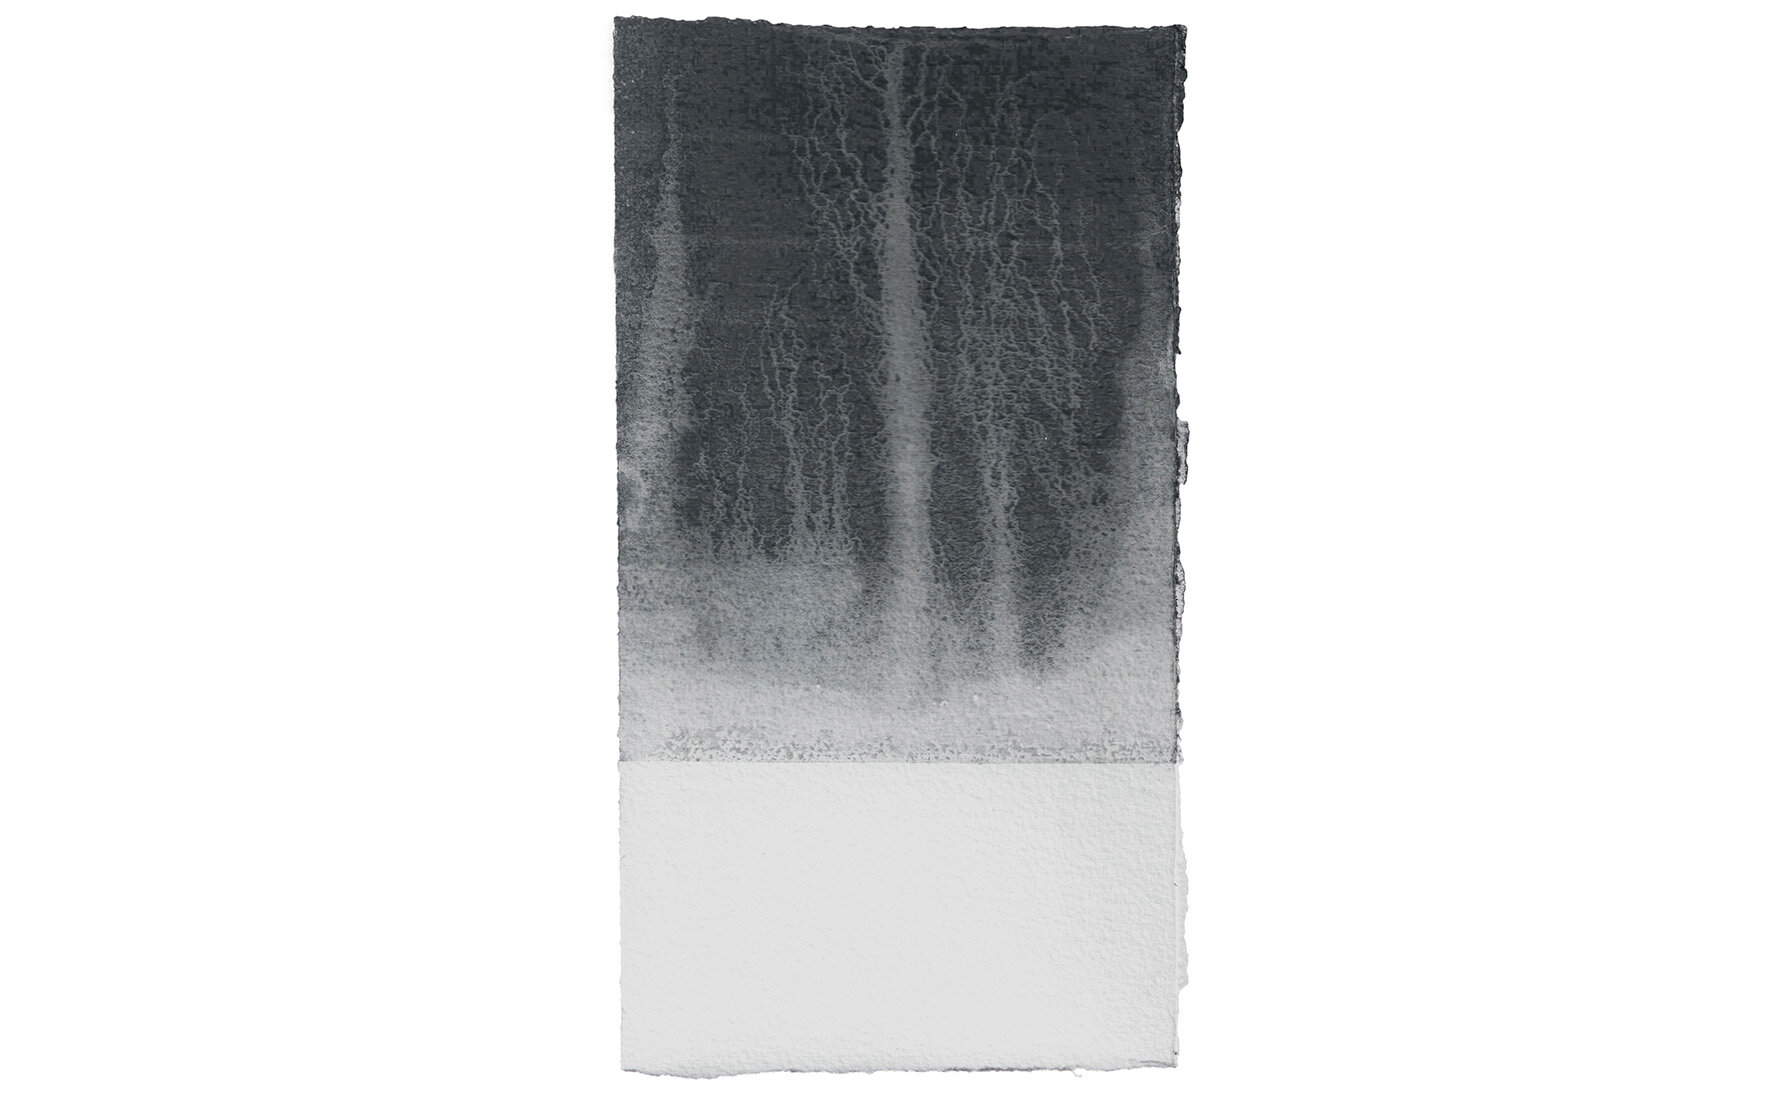   Sem Título, 2019. Grafite sobre papel de aquarela Arches 640g. Cada 26 x 14,5 cm      Untitled, 2019. Graphite on watercolor paper Arches 640g. Each 26 x 14,5cm   